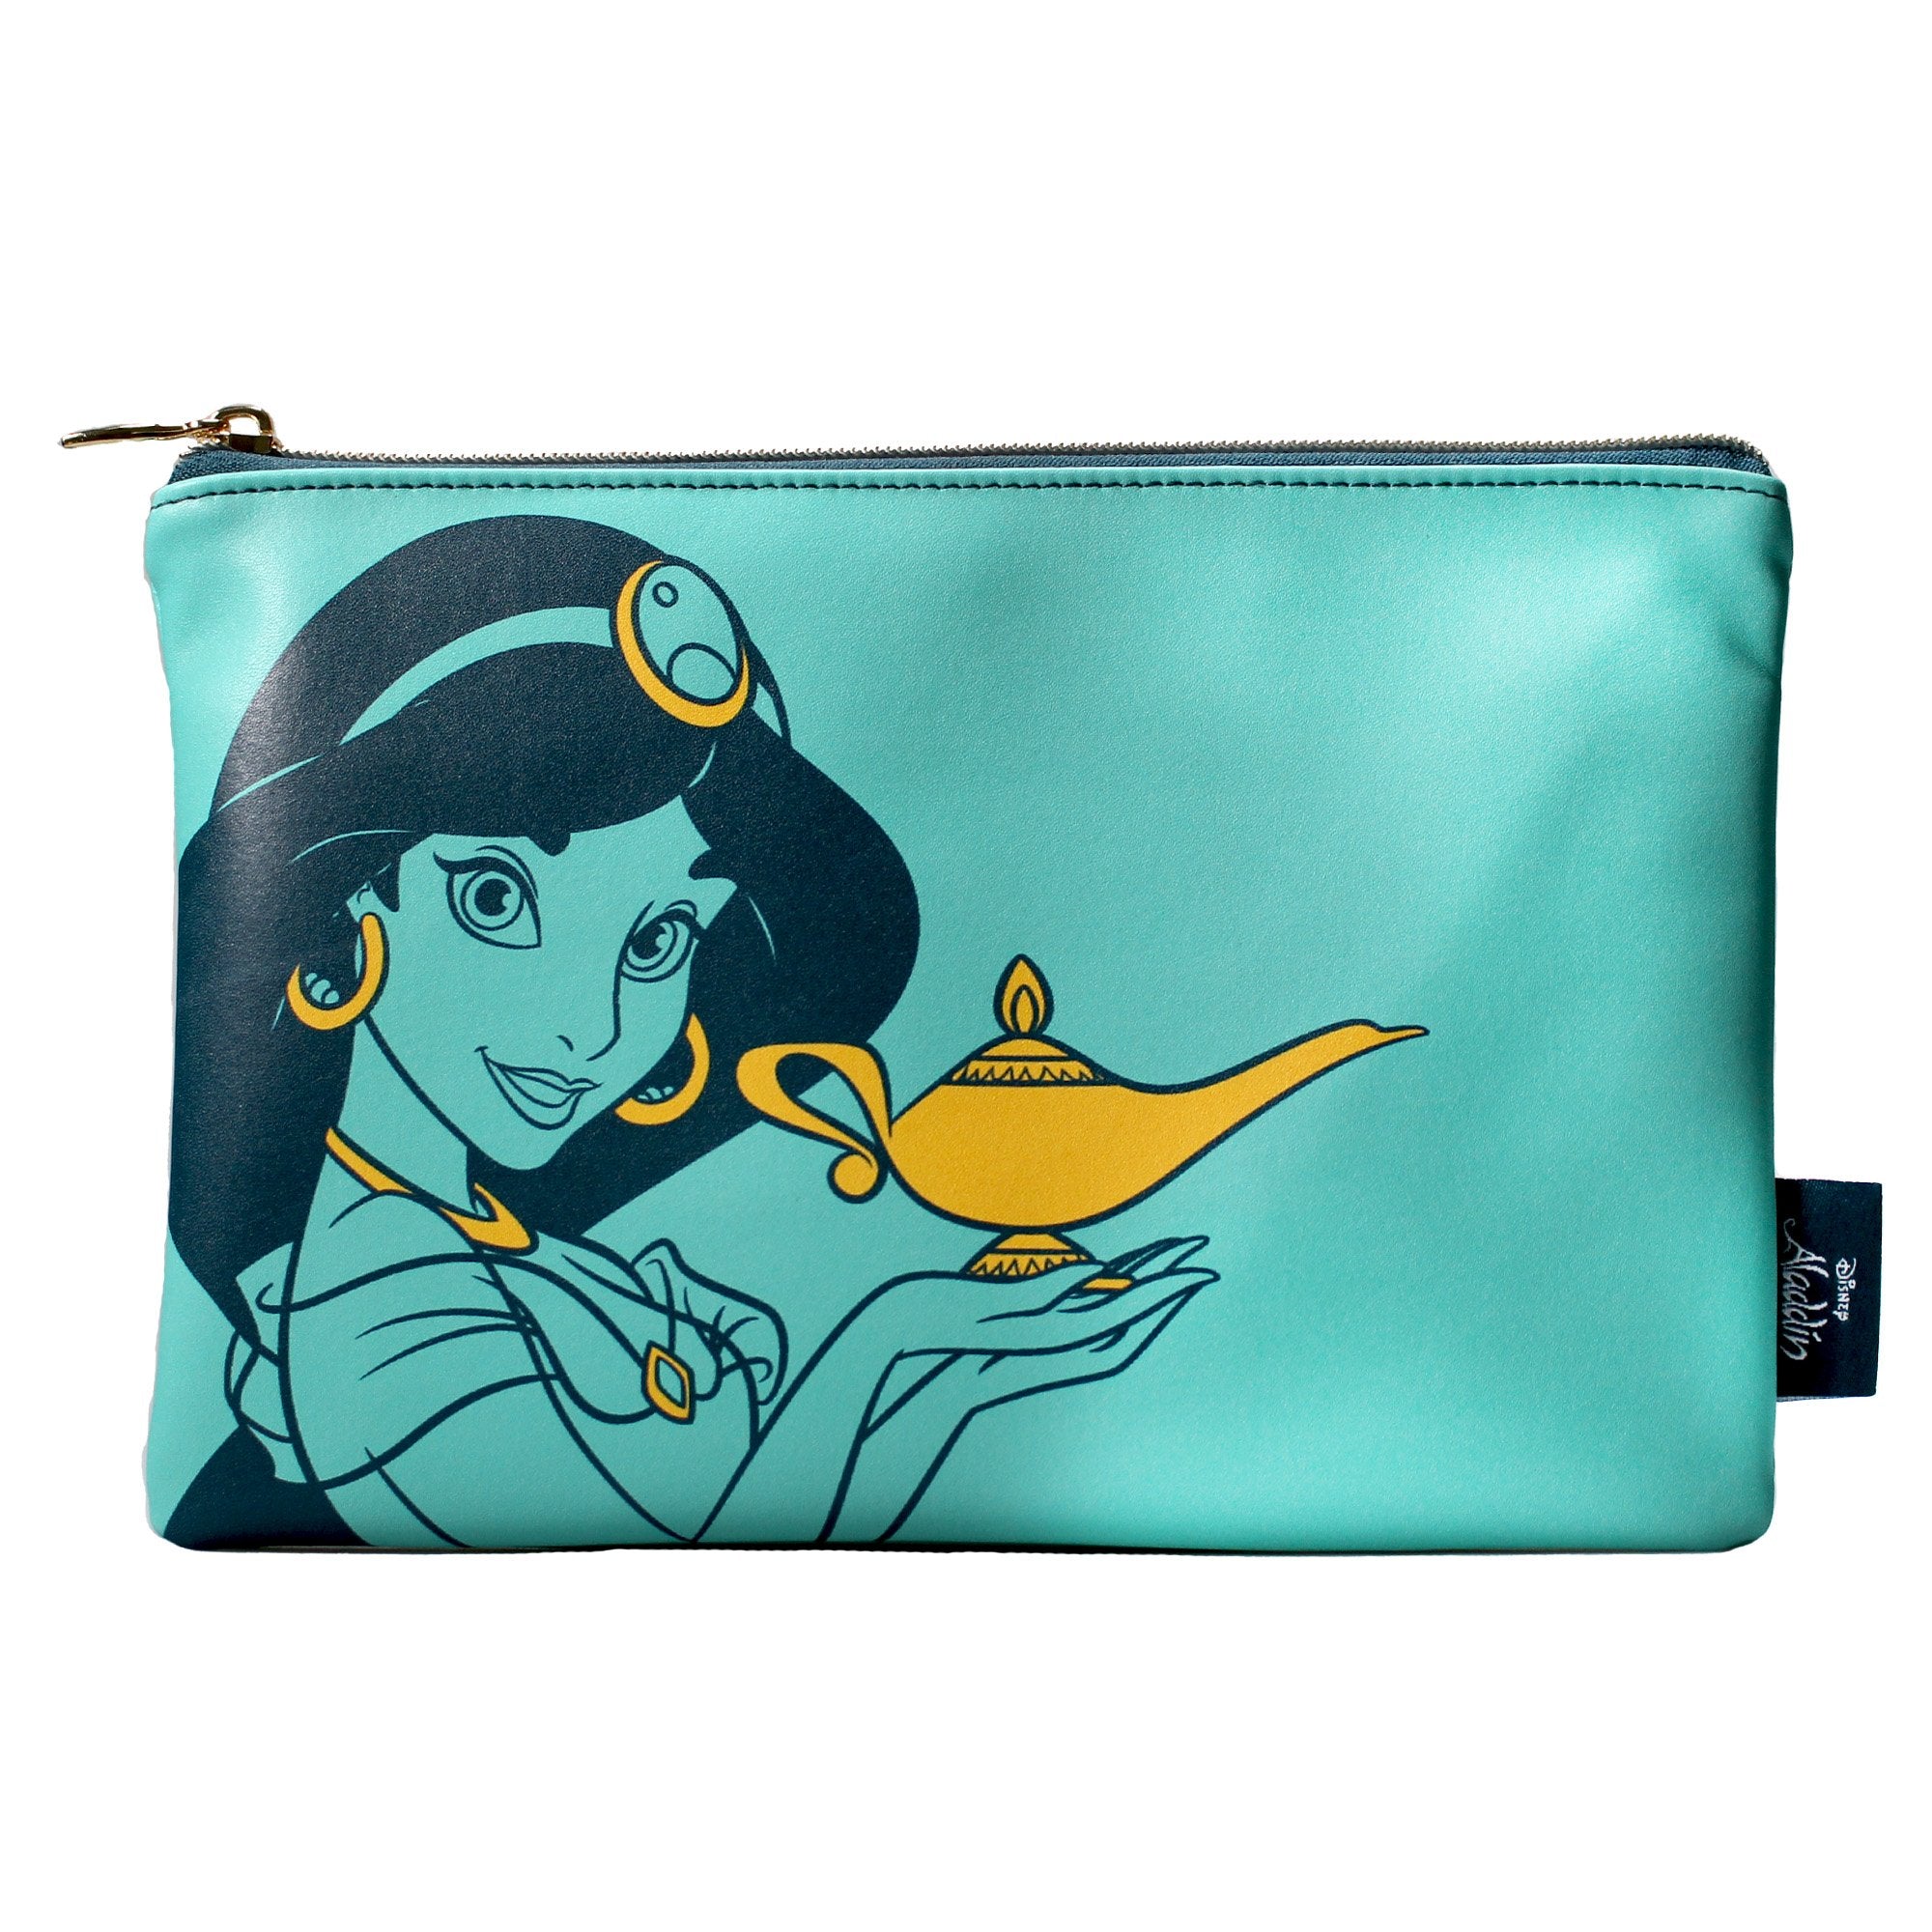 Pouch PU (16cm x 24cm) - Disney Aladdin (Jasmine)